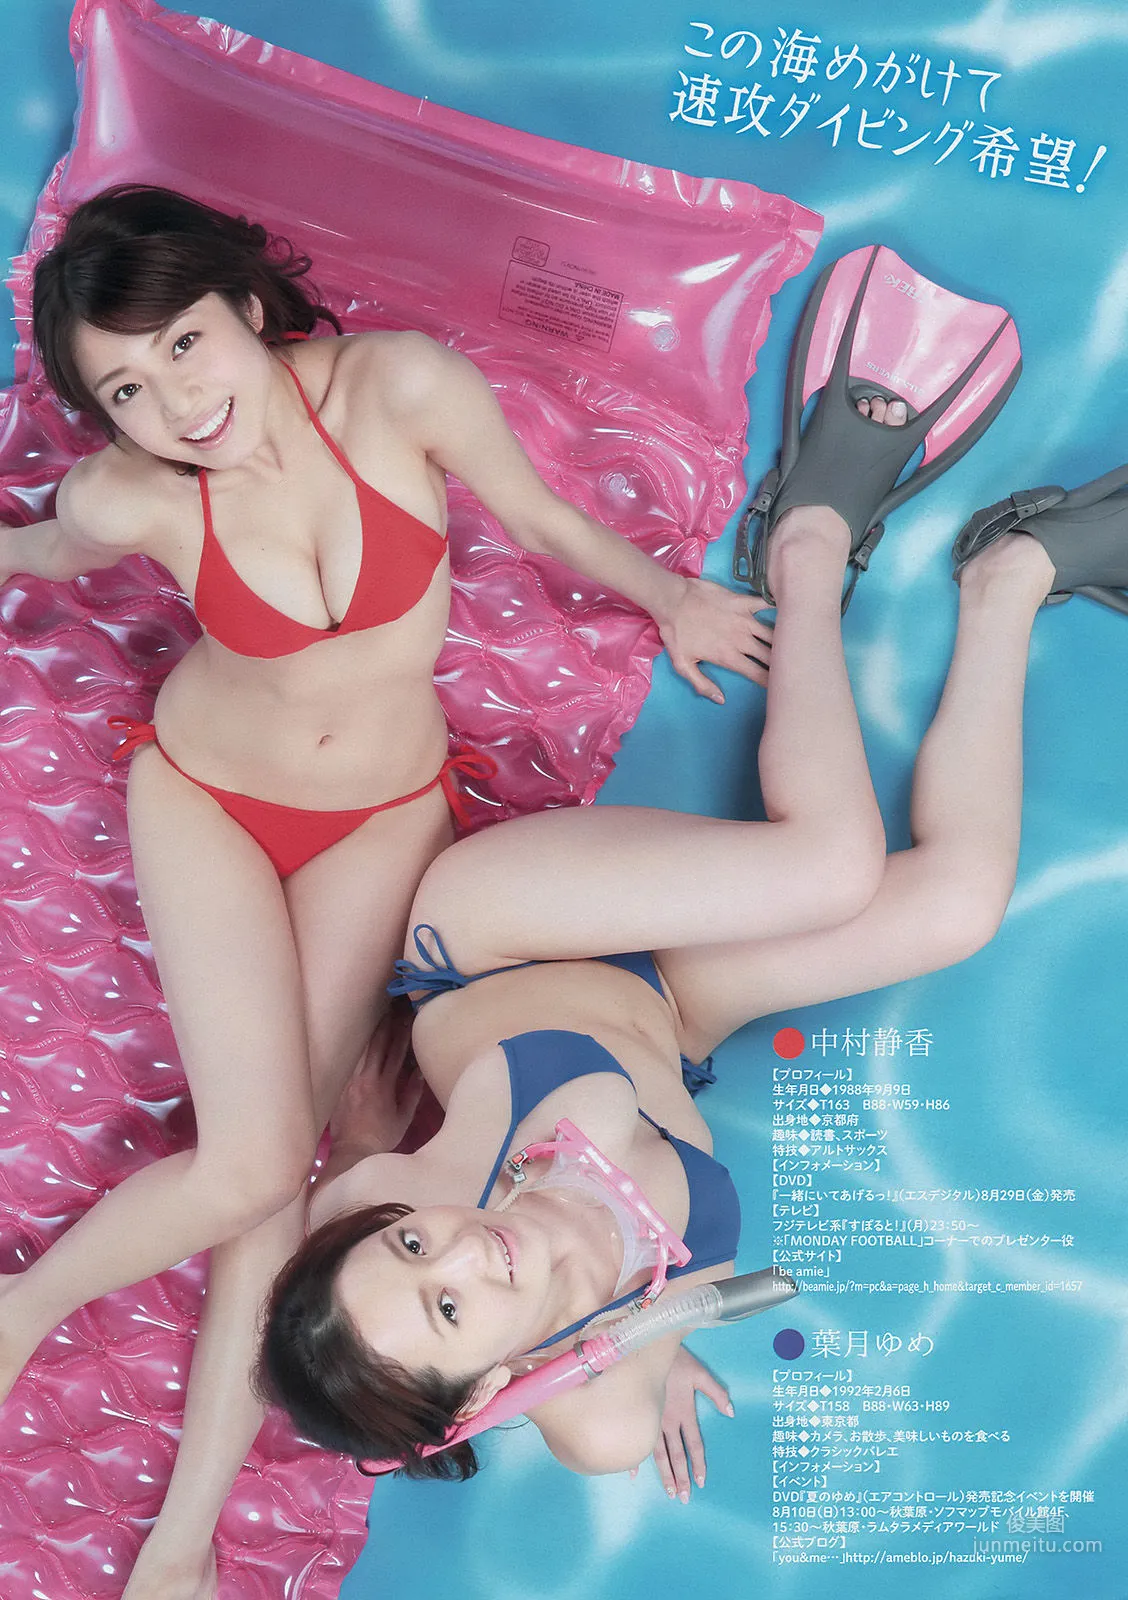 [Young Magazine] 中村静香 さいとうまりな 2014年No.36-37 写真杂志4